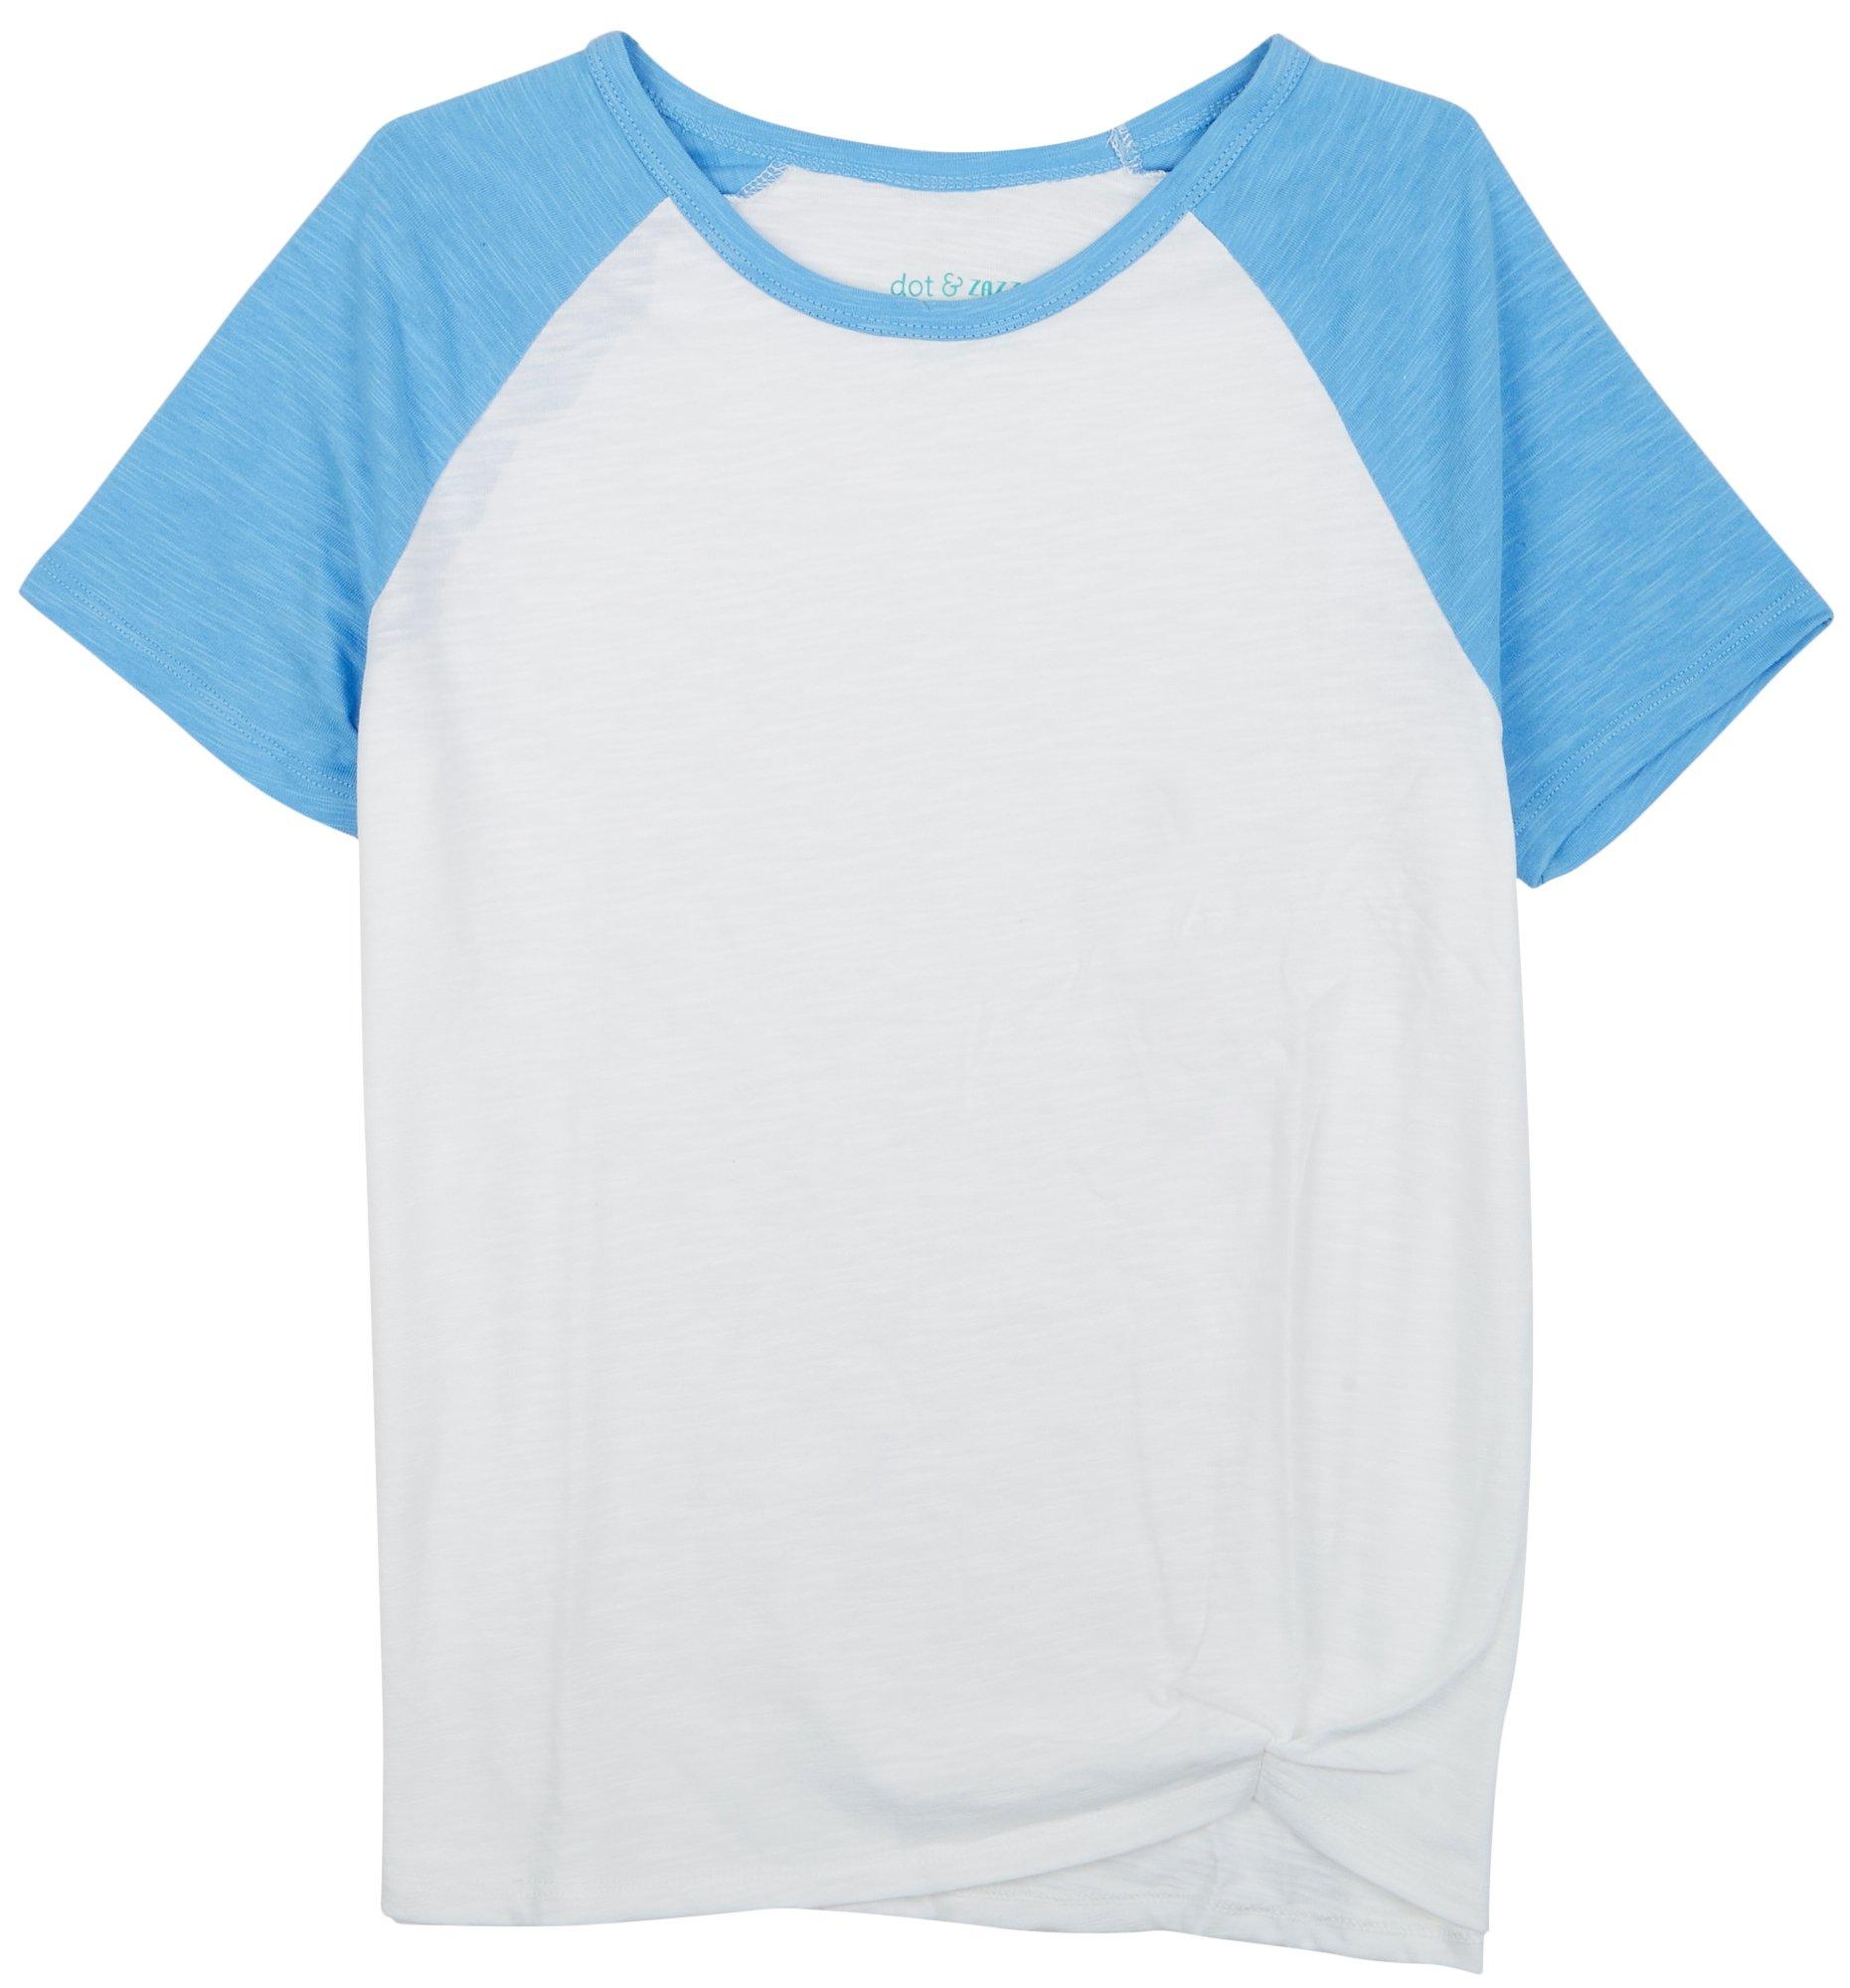 DOT & ZAZZ Little Girls Tie Front Baseball T-Shirt